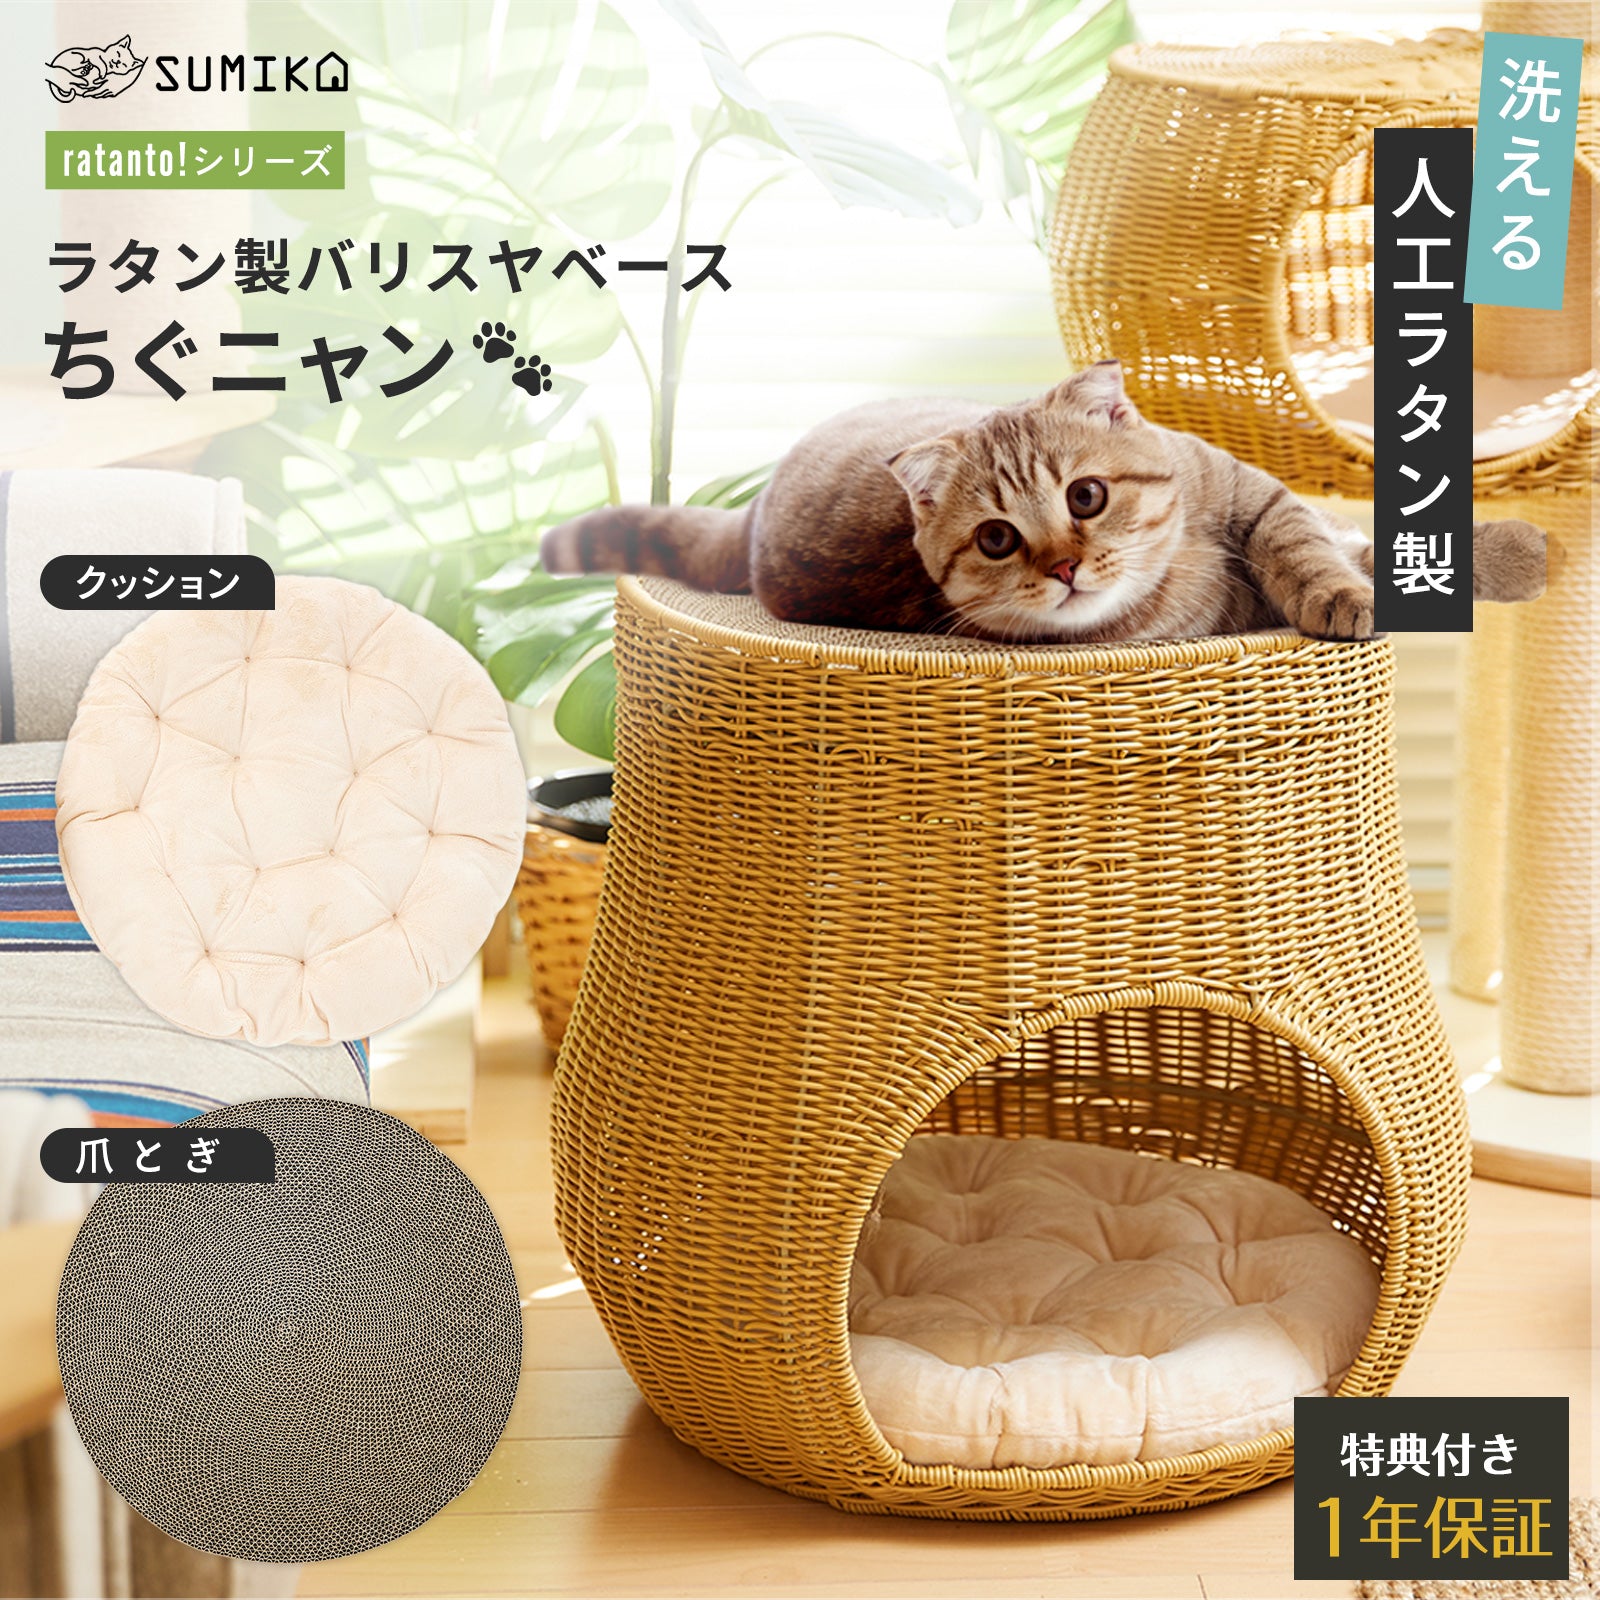 猫暮らし専門店 キミとワタシのSUMIKA ratanto!シリーズ 洗える ラタン 